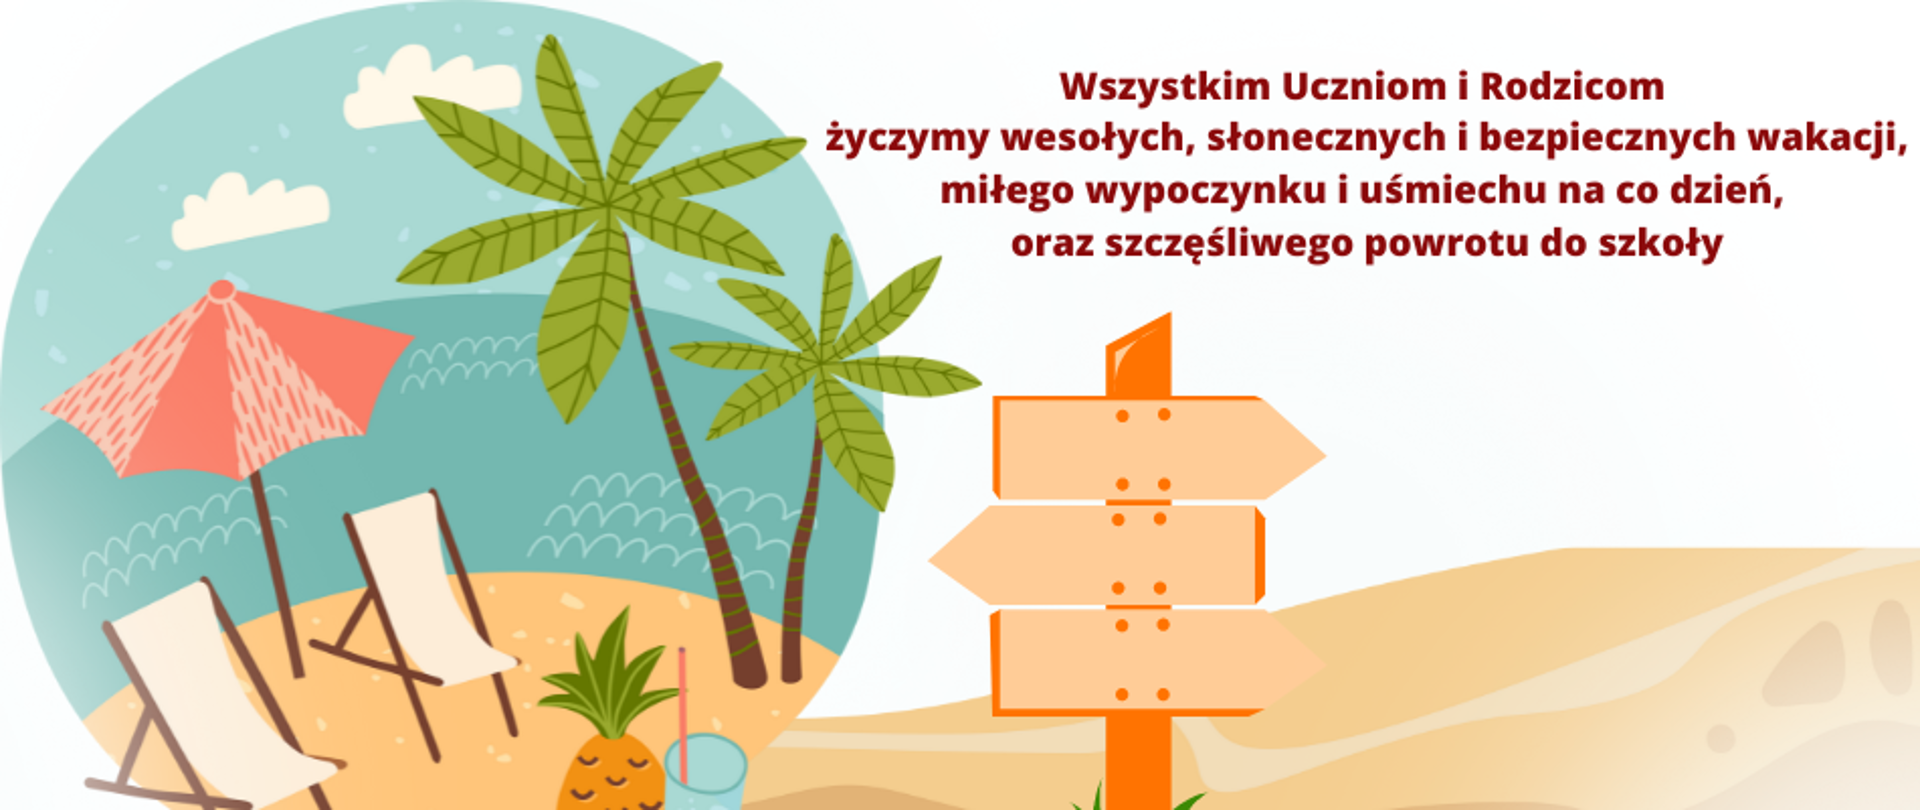 Baner z życzeniami wakacyjnymi - po lewej stronie w obszarze koła ikonografika plaży nad wodą, rozstawione dwa fotele plażowe oraz parasol, po prawej stronie dwie palmy raz sok oraz owoc cytrusowy. Po prawej stronie na górze brązowymi literami napis: Wszystkim Uczniom i Rodzicom życzymy wesołych, słonecznych i bezpiecznych wakacji, miłego wypoczynku i uśmiechu na co dzień, oraz szczęśliwego powrotu do szkoły, Pod napisem drogowskaz.